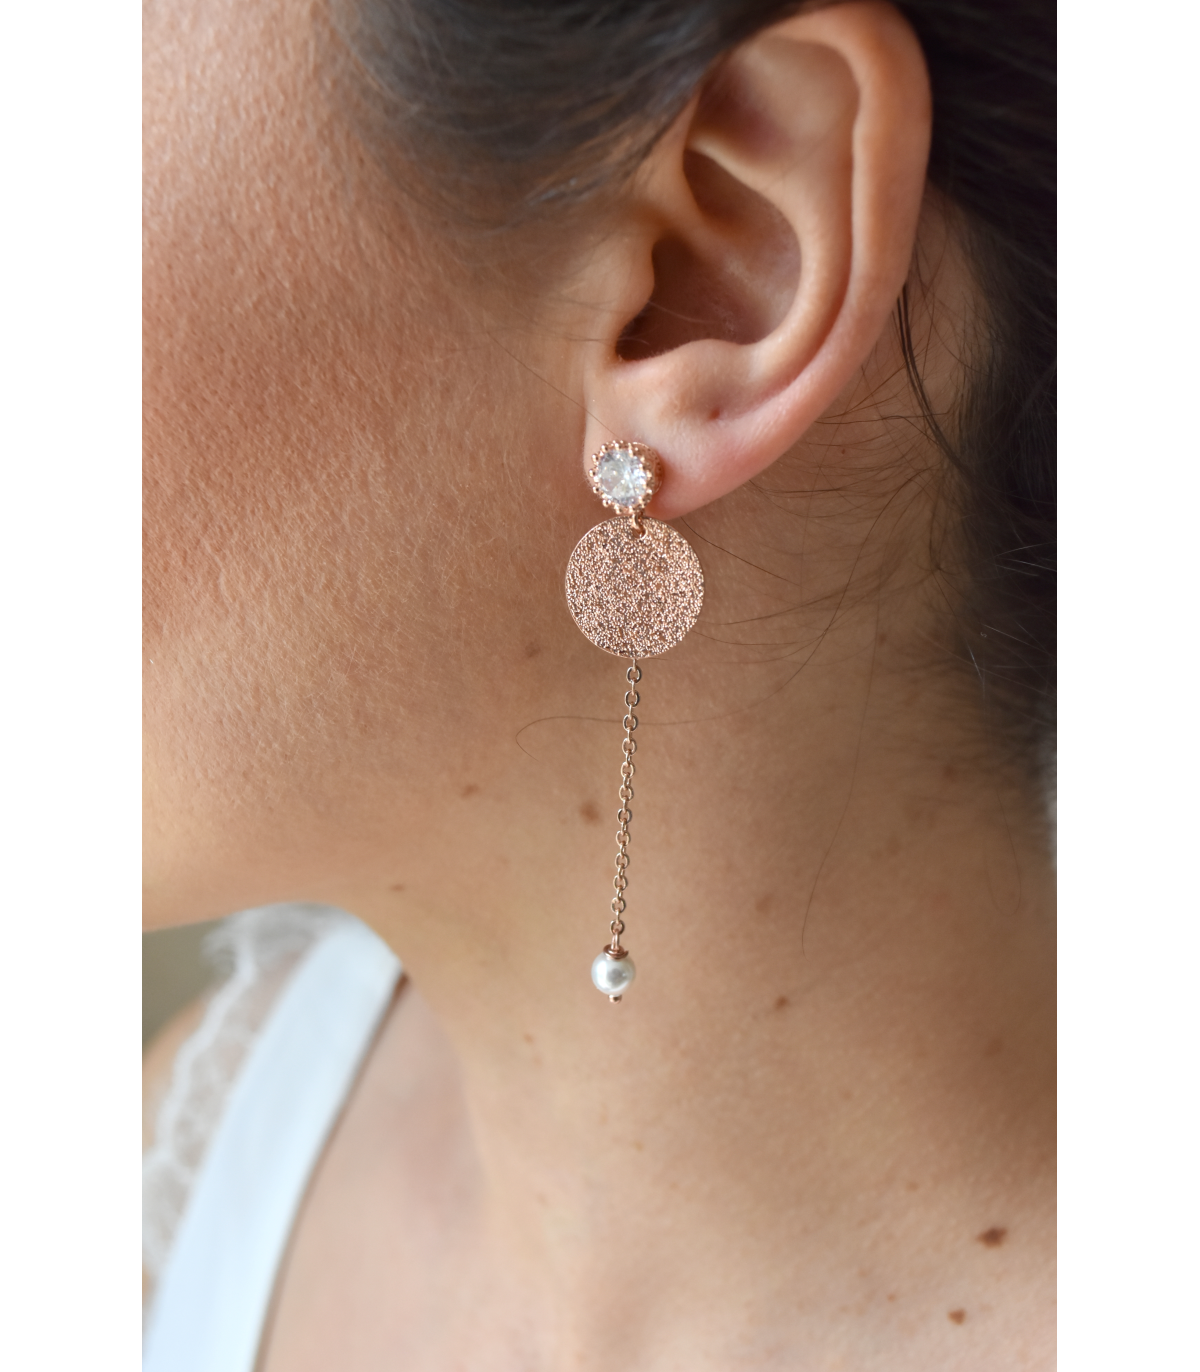 Boucles d'oreilles pour la mariée rose gold, boucles d'oreilles pendantes de mariage. Réalisées en perles de cristal.